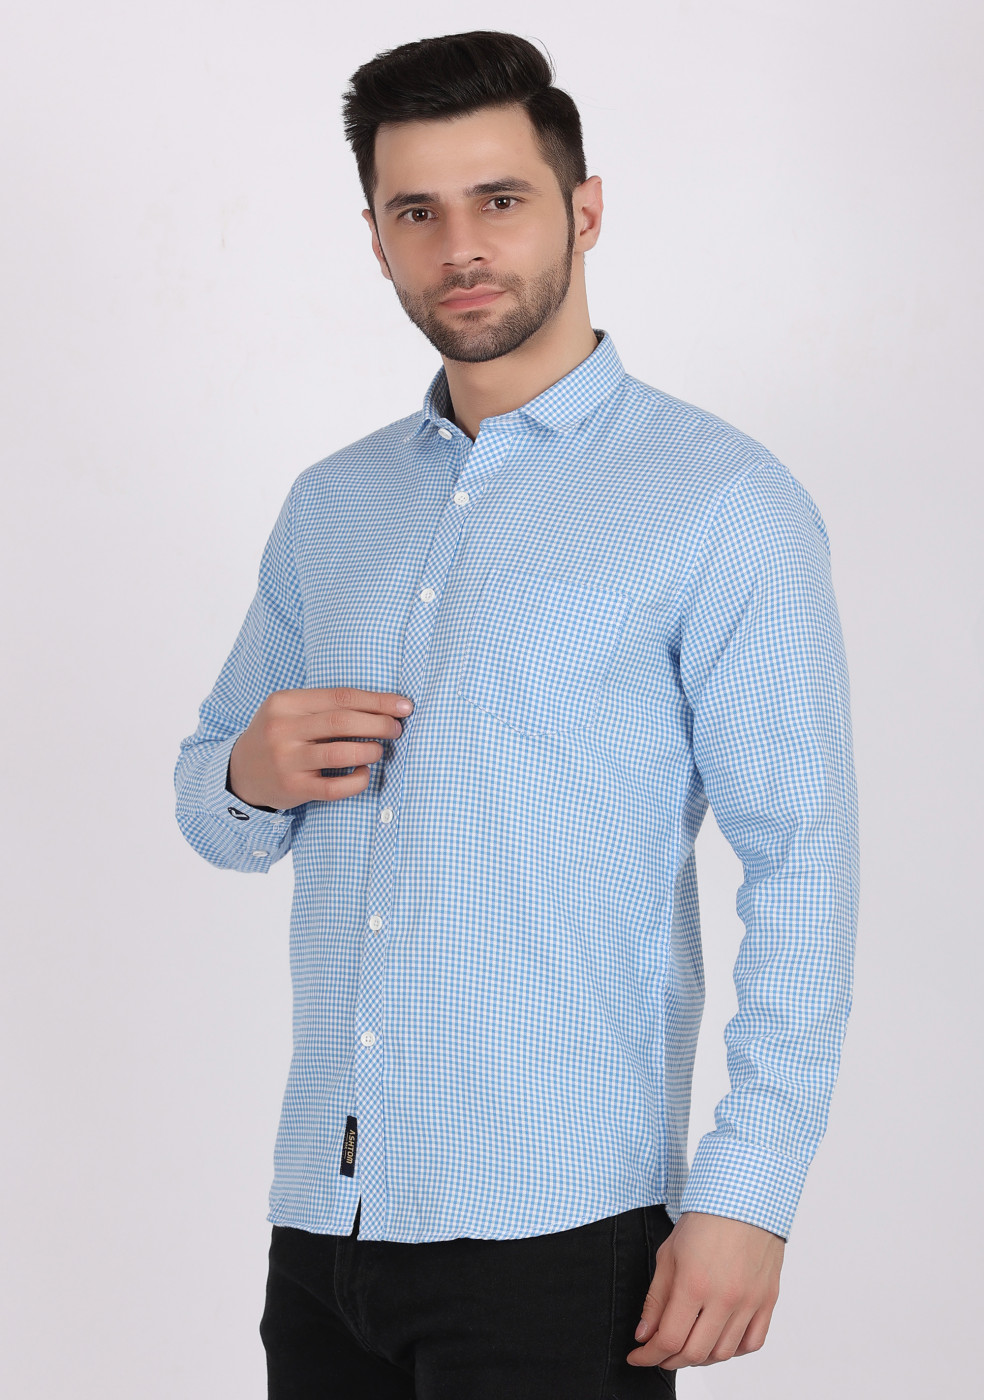 ASHTOM Sky Blue Color Small Check Shirt For Men